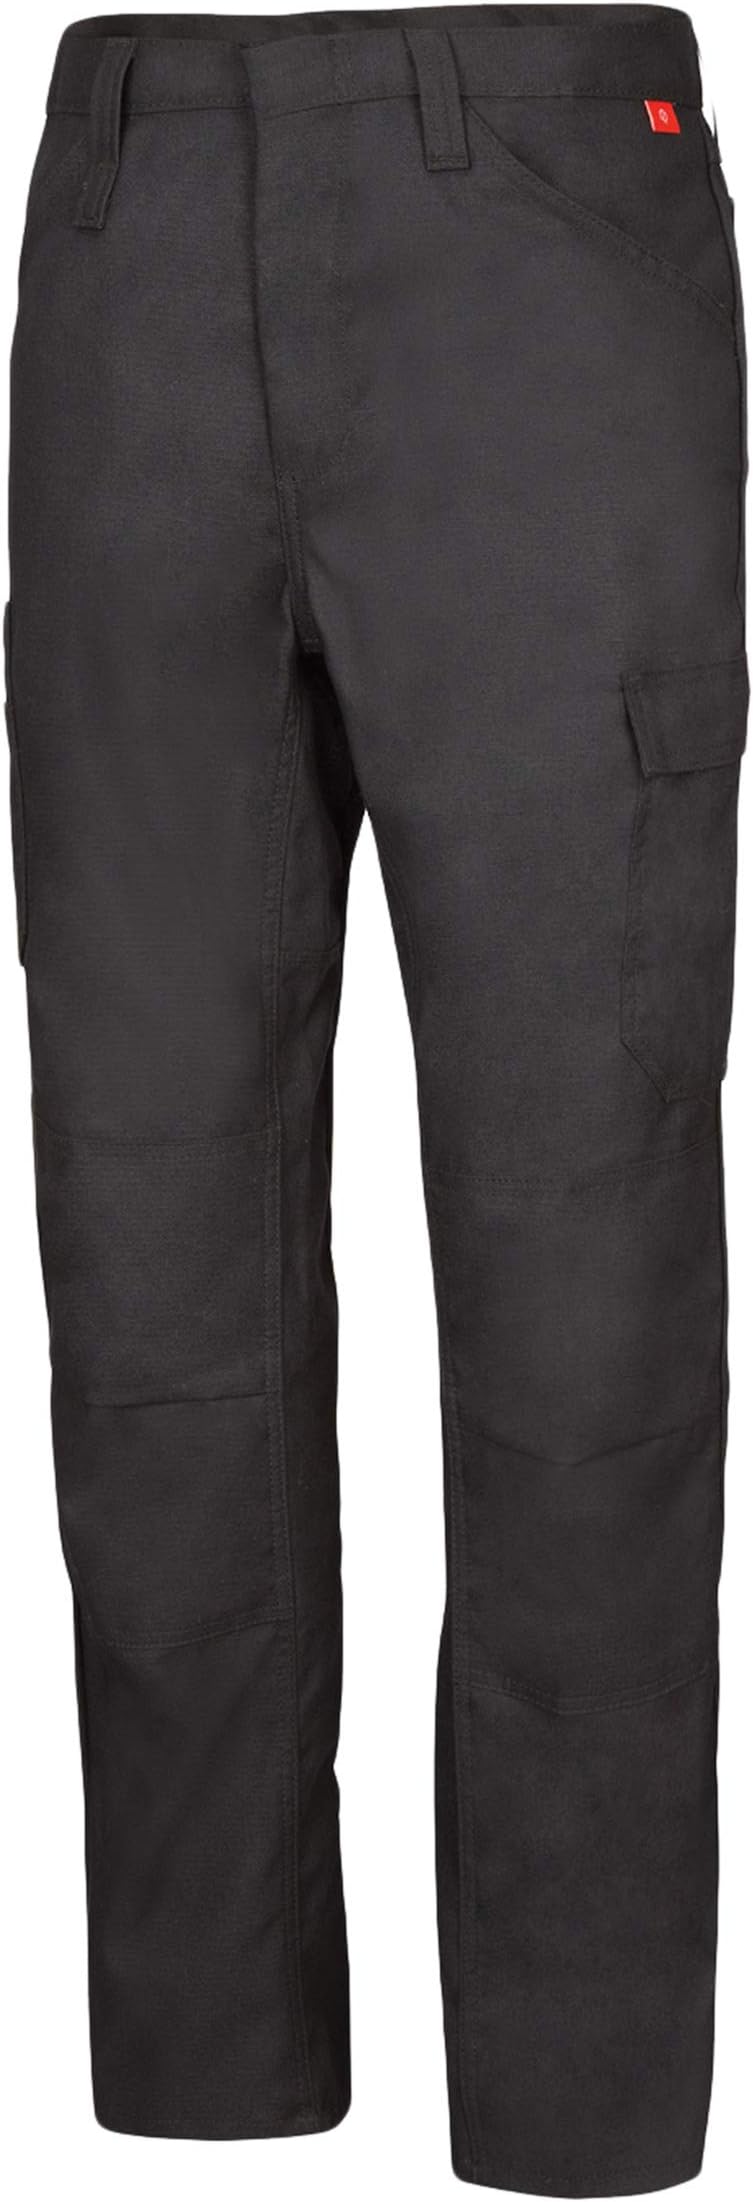 Легкие огнестойкие брюки iQ Series Bulwark FR, черный